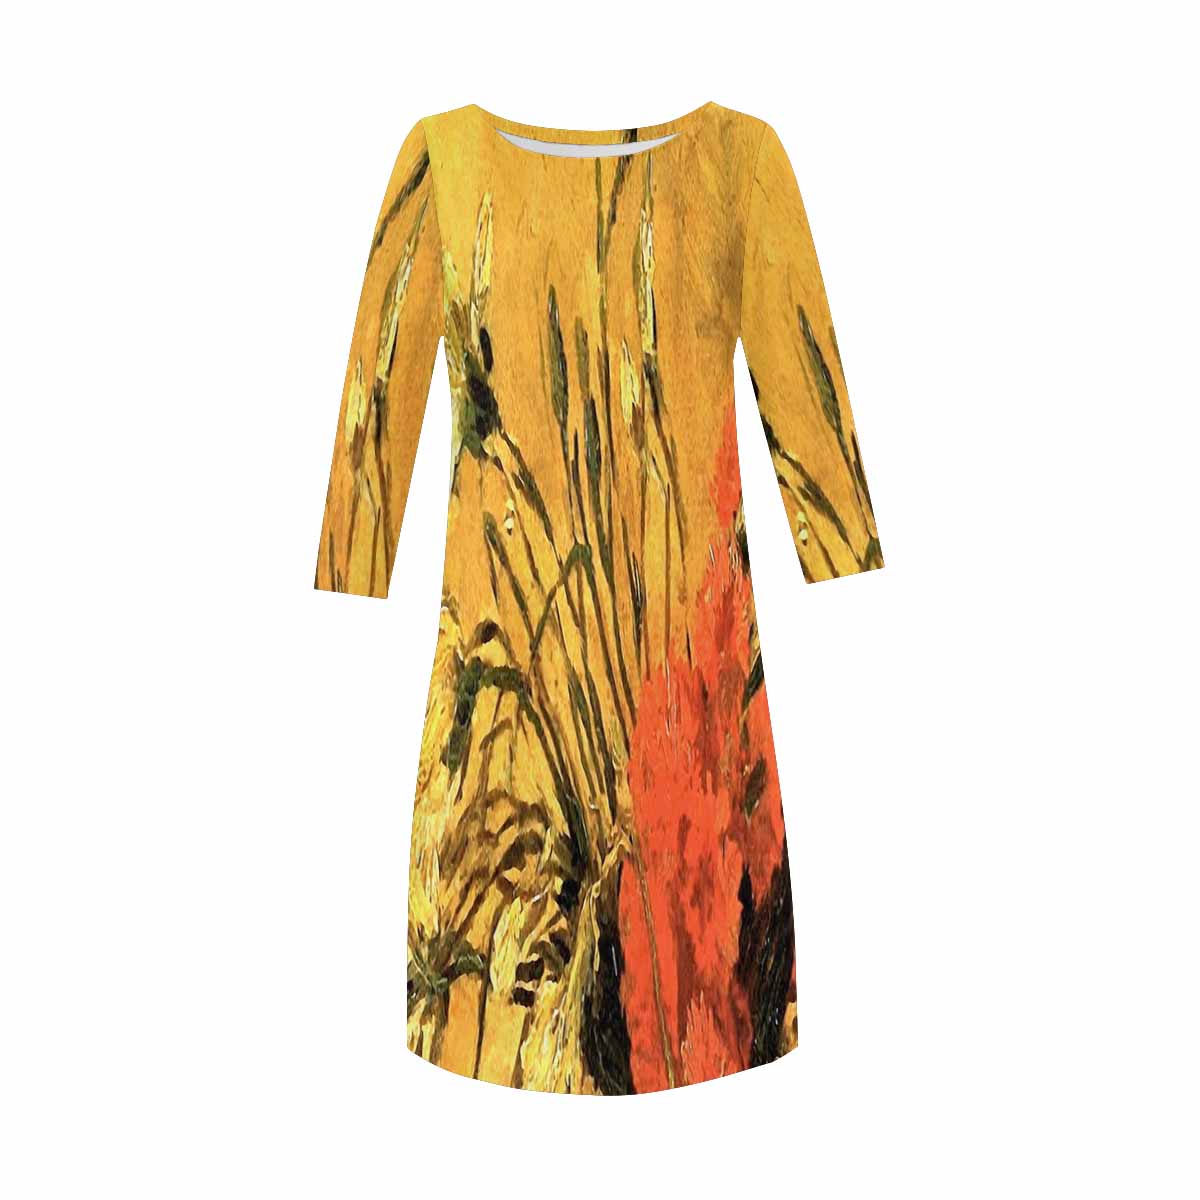 Vintage floral loose dress, XS to 3X plus size, model D29532 Design 61